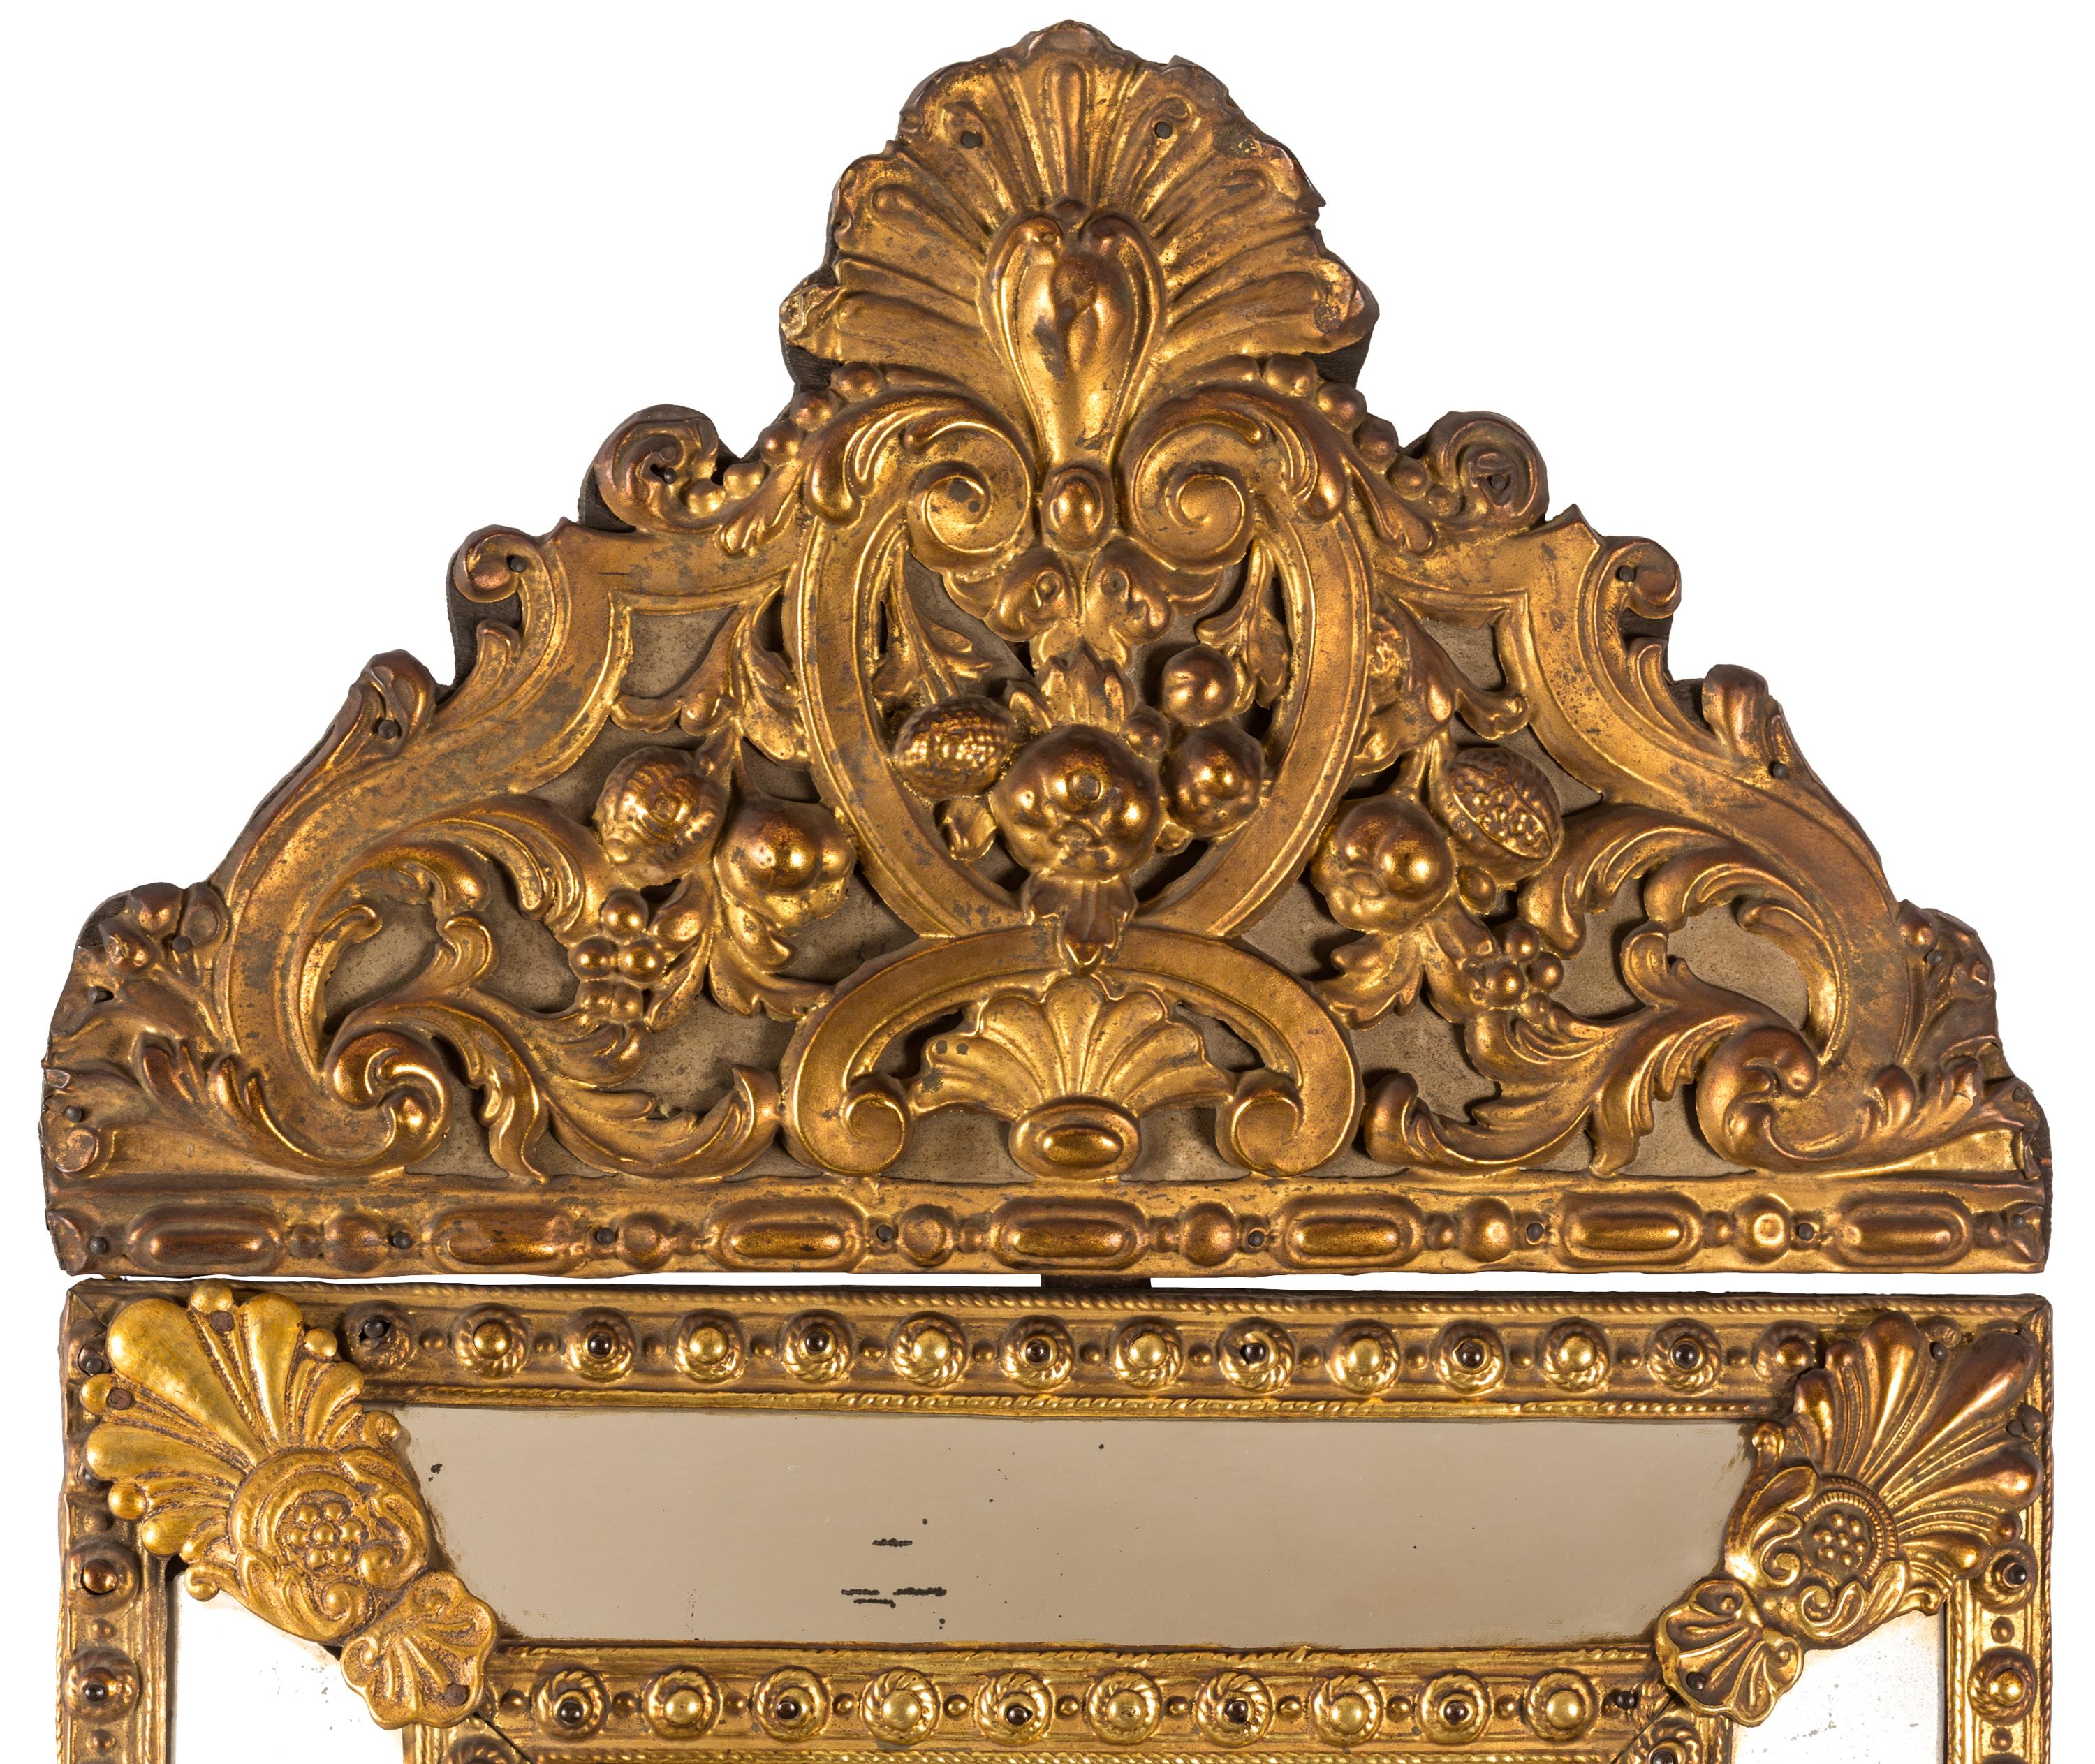 Miroir de style baroque hollandais du 19e siècle avec verre central biseauté et cadre en métal de couleur or avec décoration sculpturale en relief. Les motifs en relief ont été réalisés à la main à l'aide d'une technique appelée 